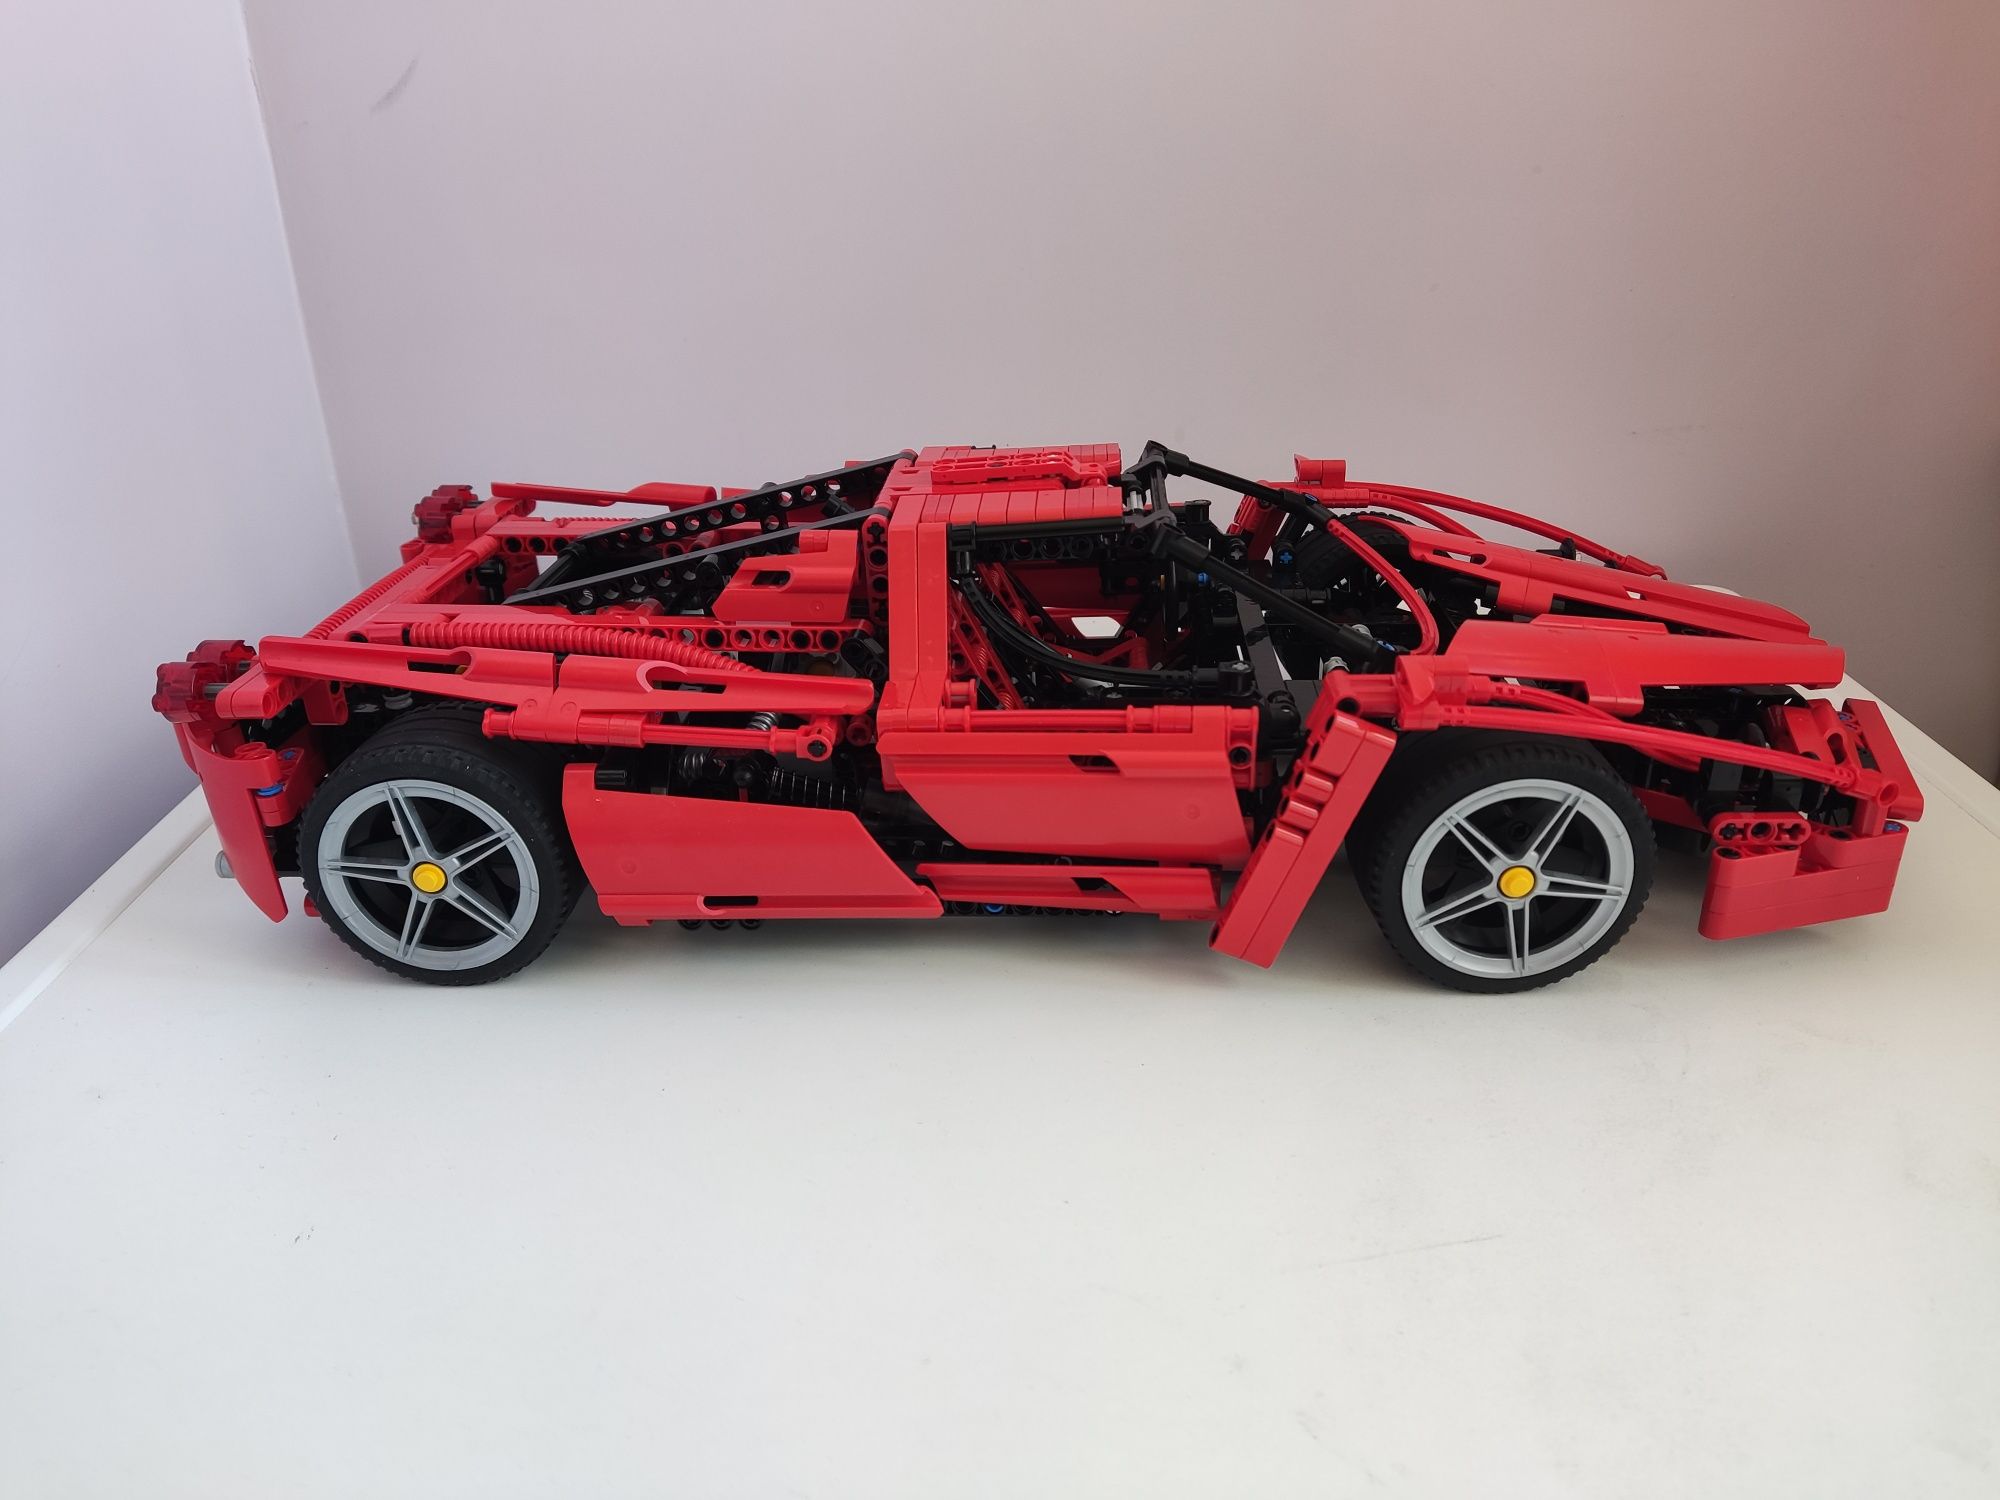 Lego Ferrari Enzo 8653 1:10